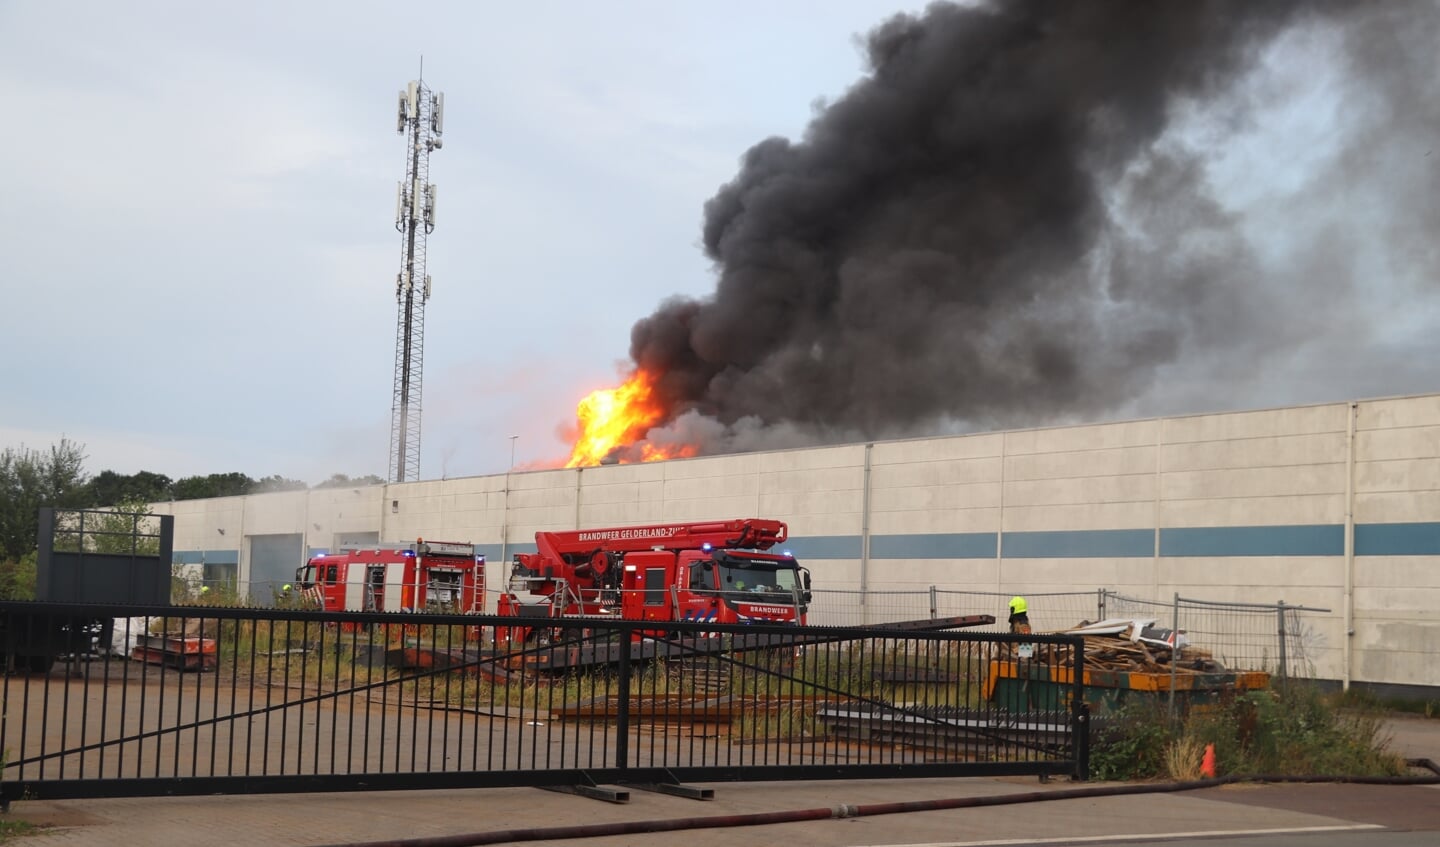 • De vlammen sloegen metershoog uit het dak van het bedrijfspand en volgens de politie bestaat er gevaar voor explosies.